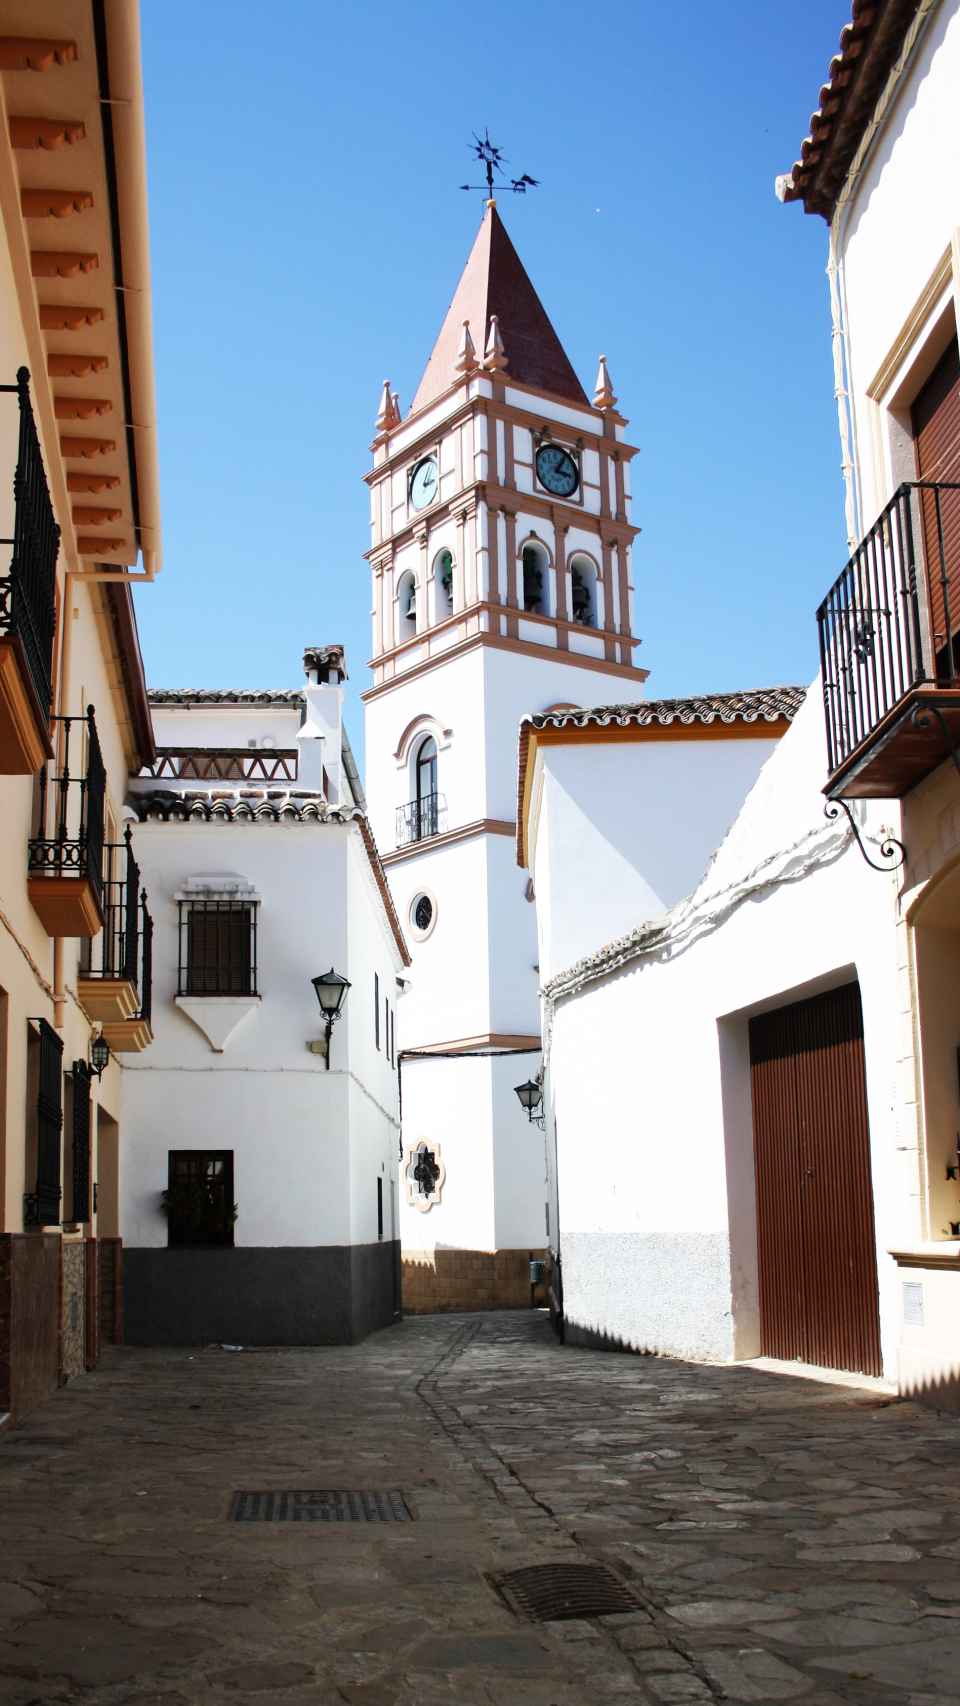 La iglesia de San Juan de Letrán es uno de los puntos obligados a contemplar en Arriate.